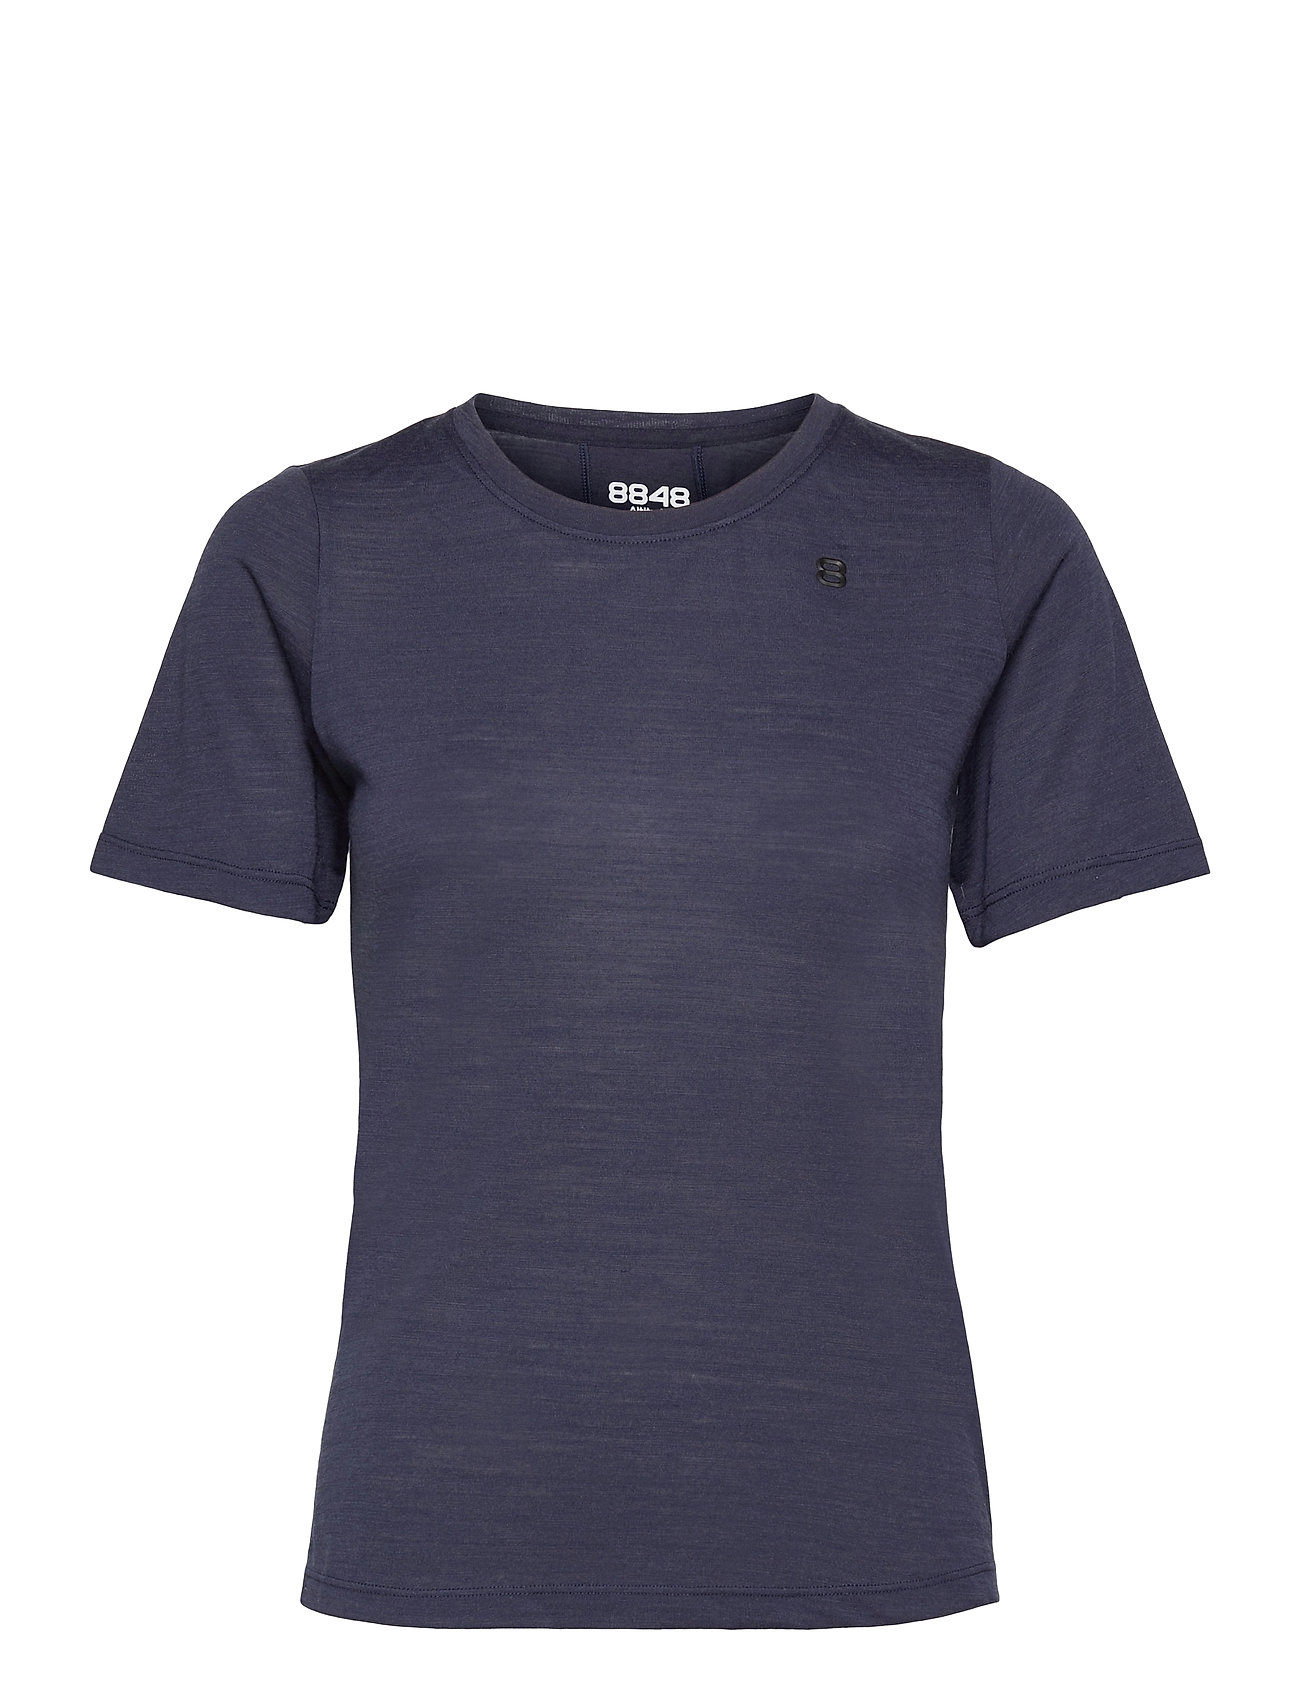 Twig W Tee T-shirts & Tops Short-sleeved Sininen 8848 Altitude